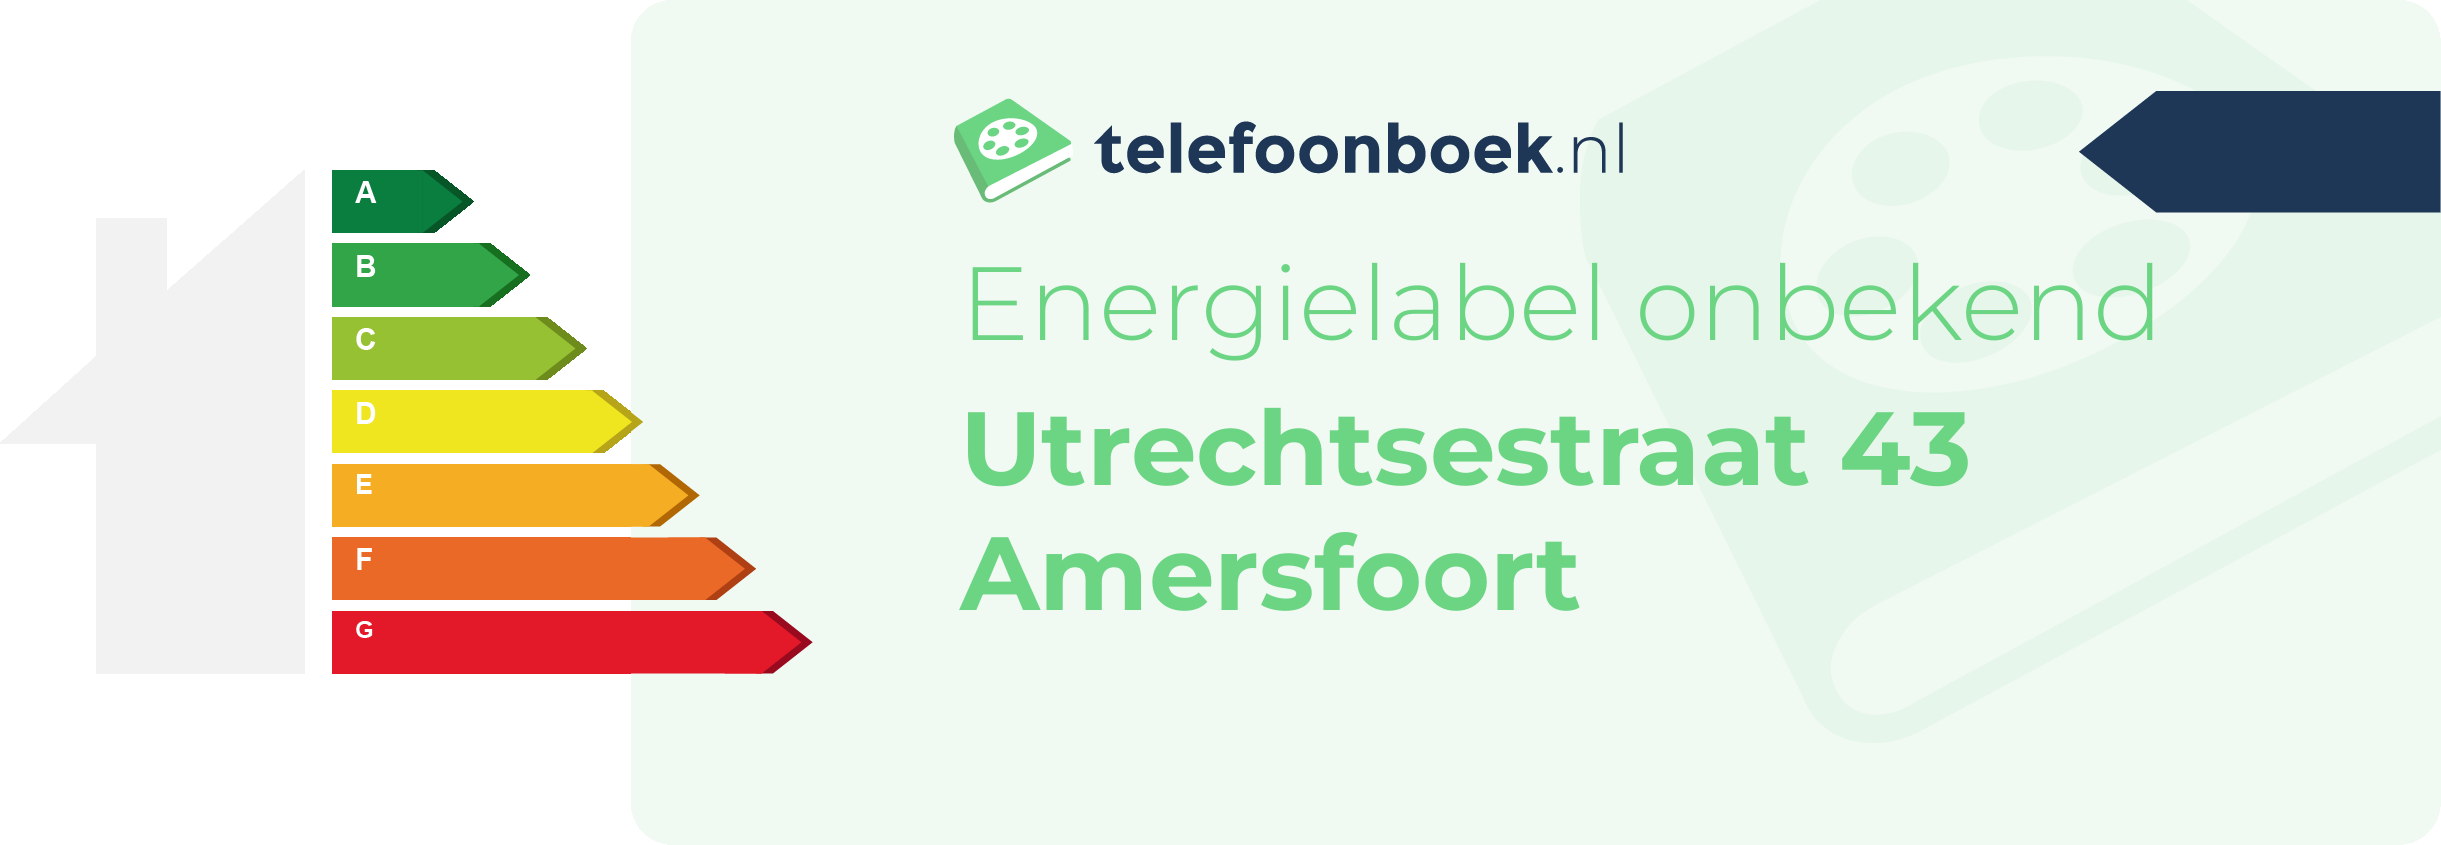 Energielabel Utrechtsestraat 43 Amersfoort